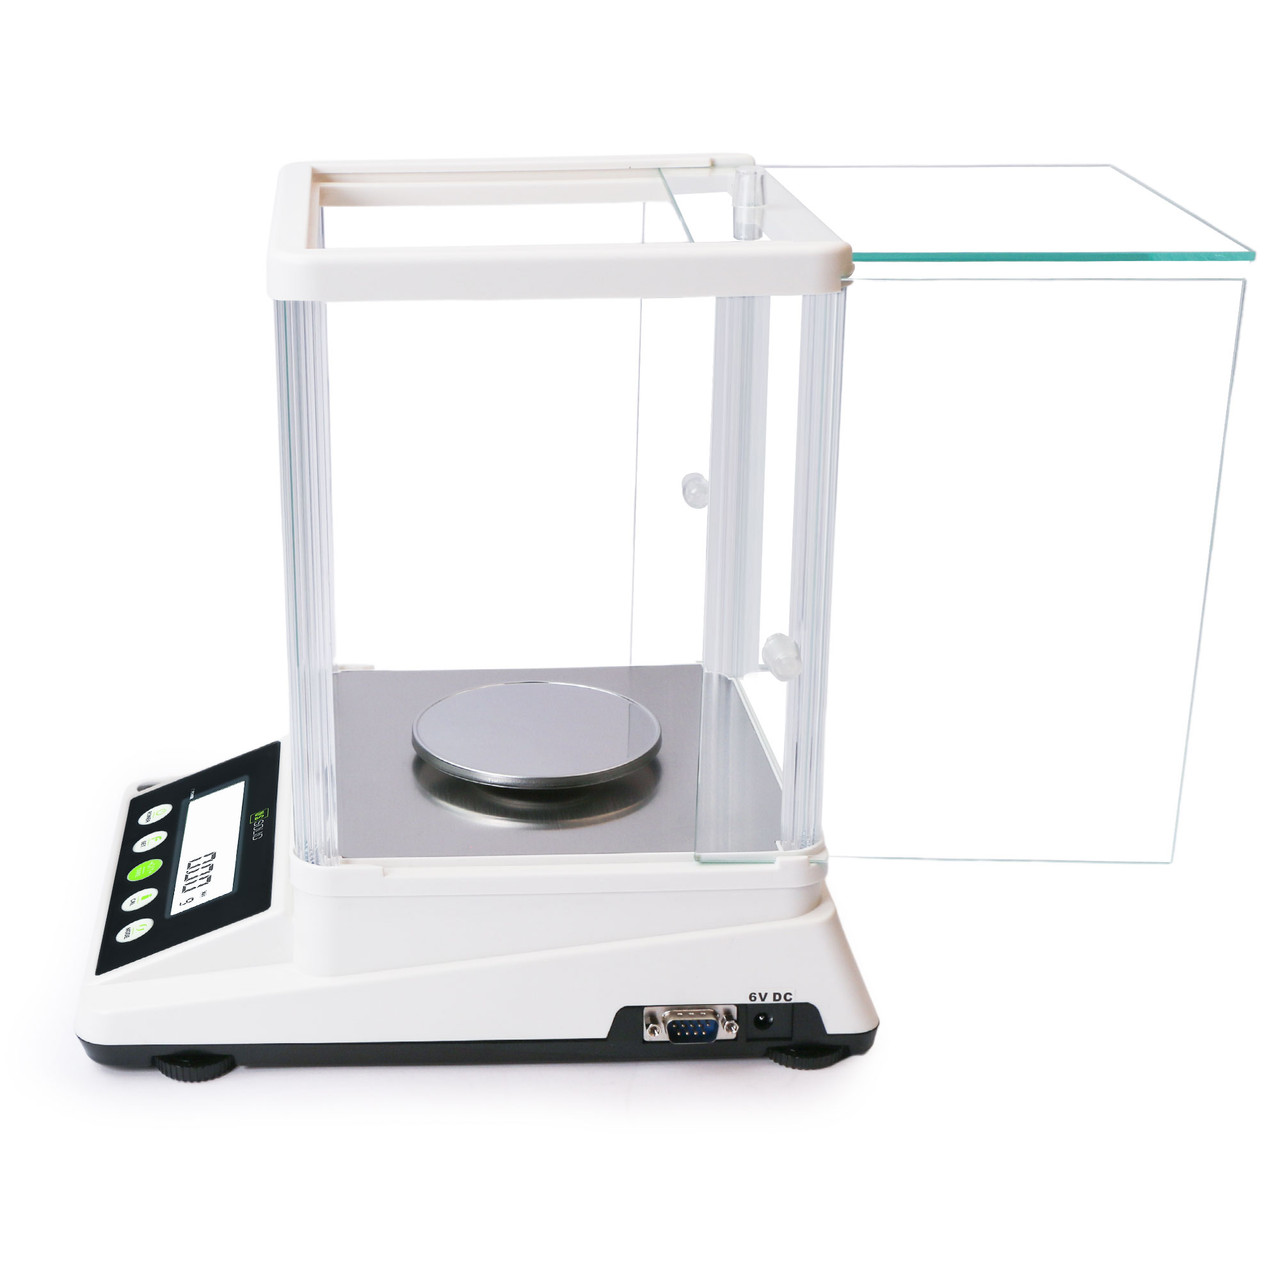 U.S. Solid 2 kg x 0.01 g Precision Balance Digital Lab Scale